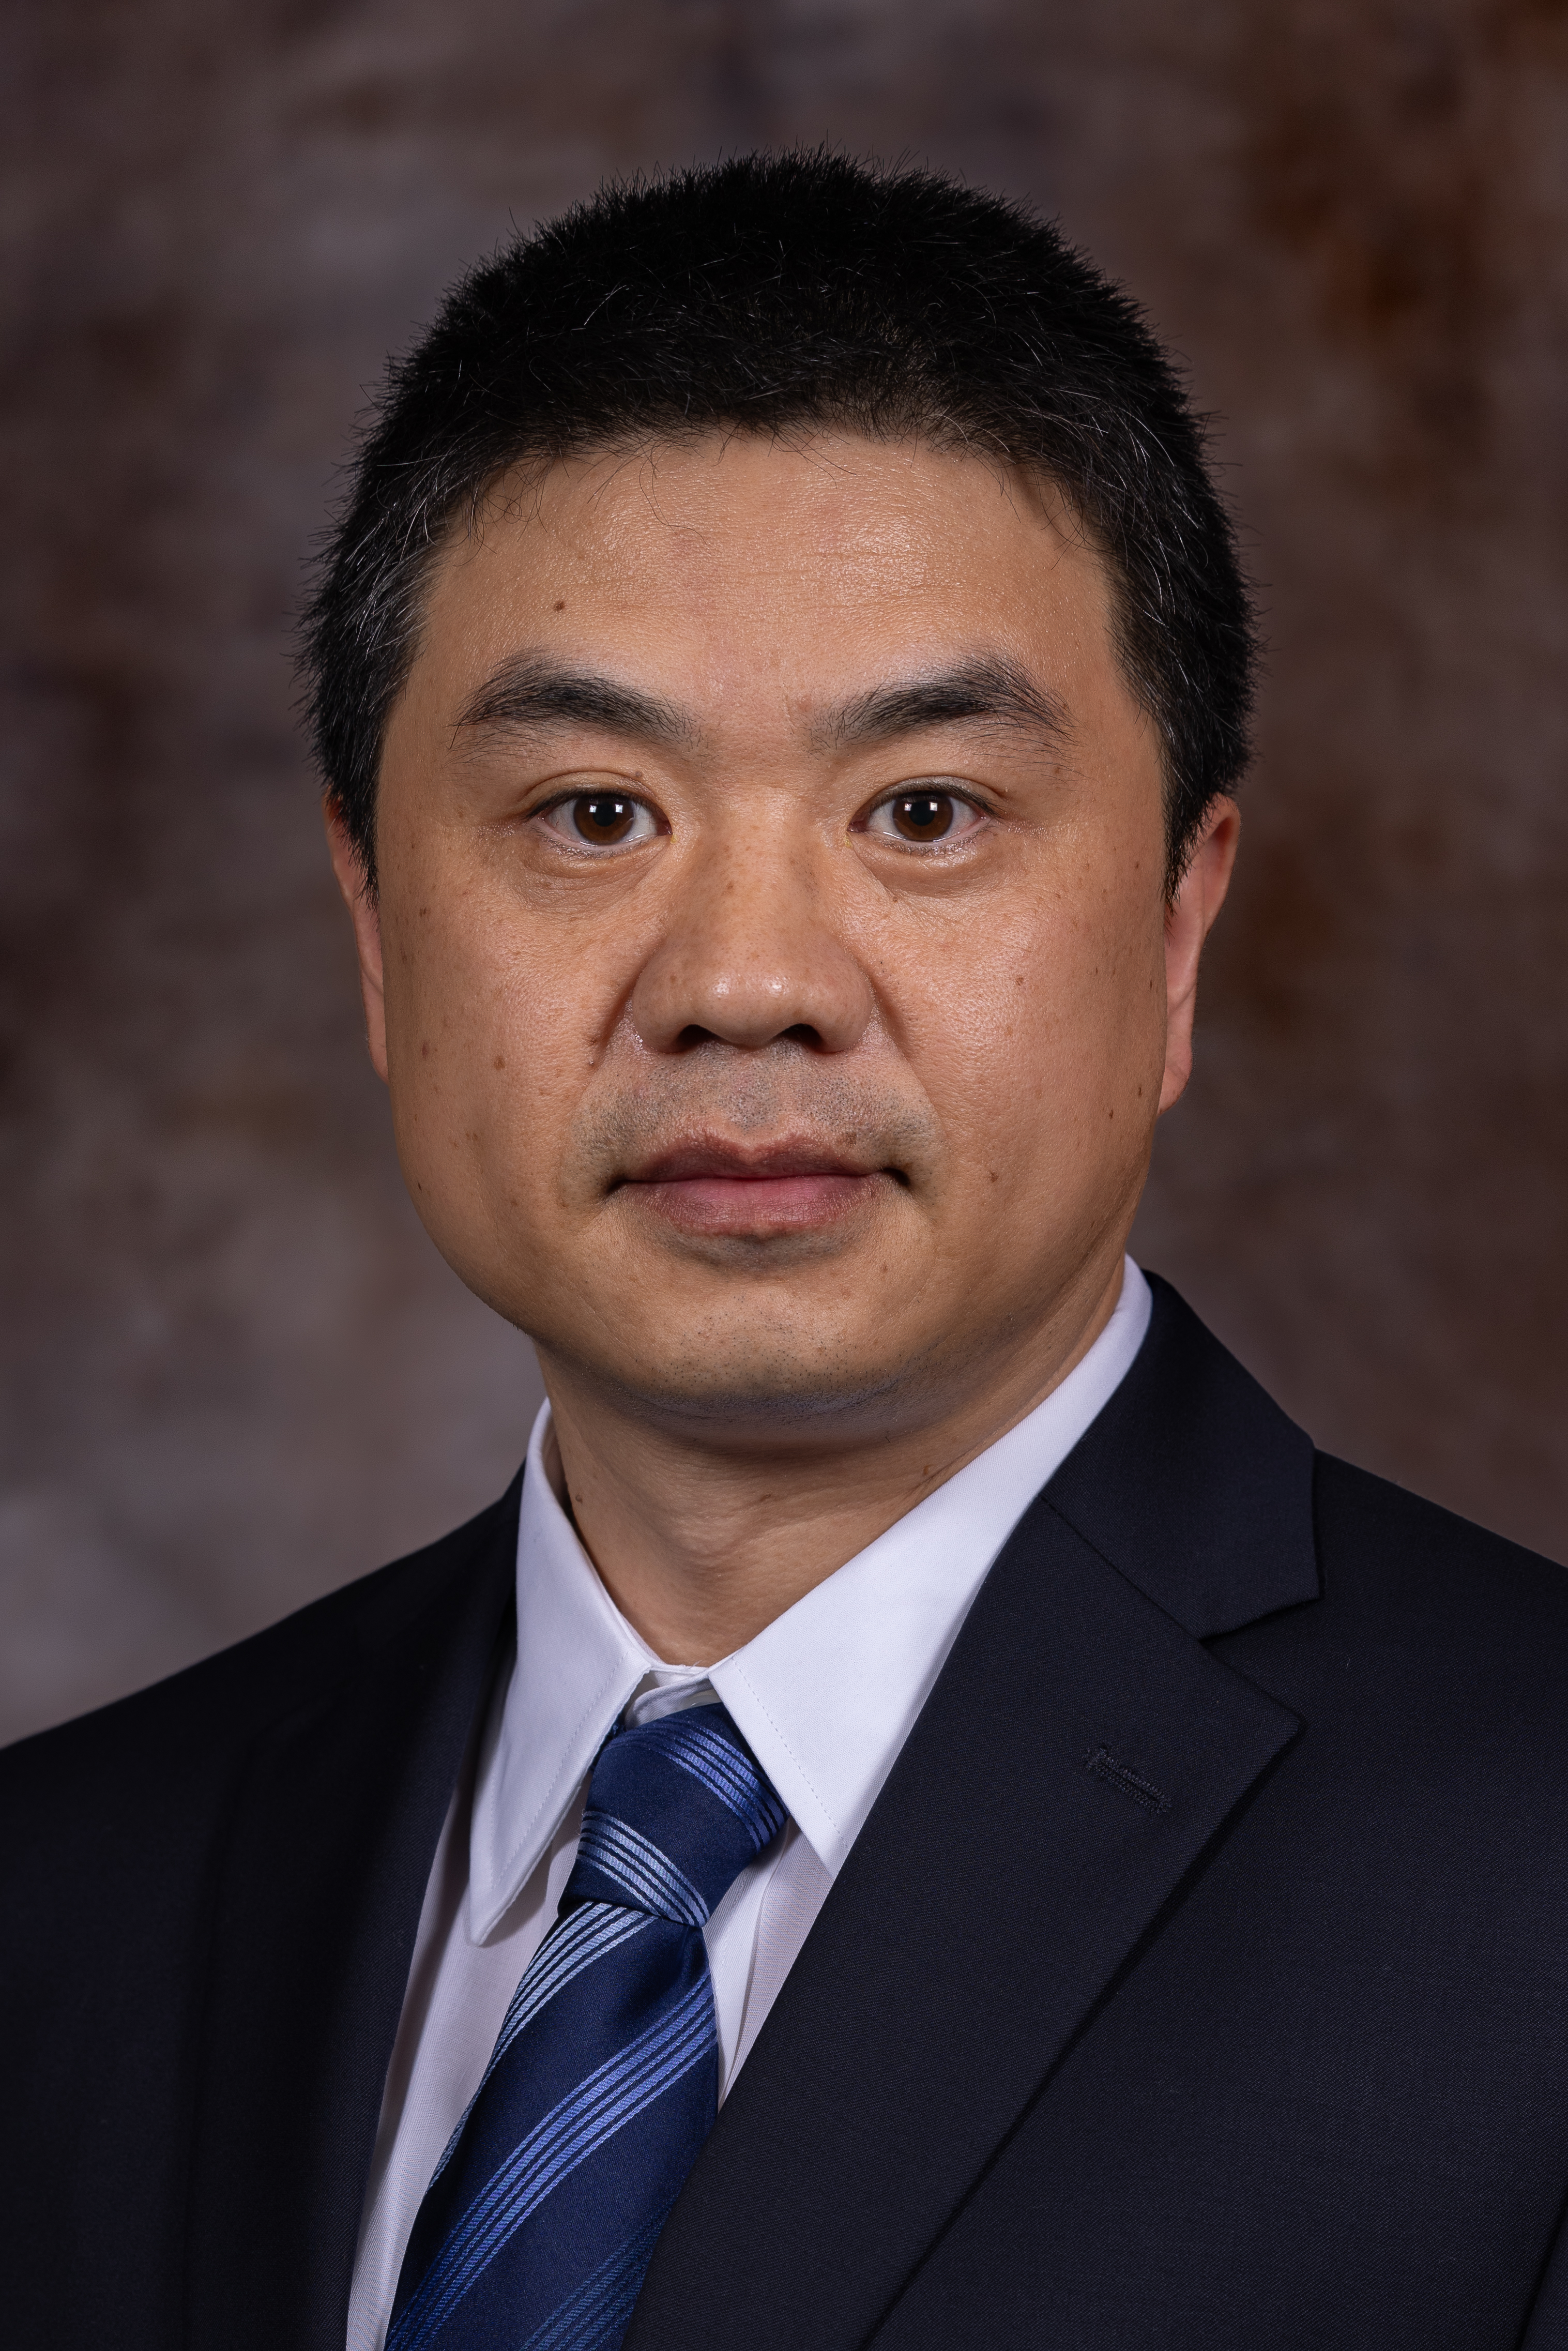 Dr. Xiao Chang